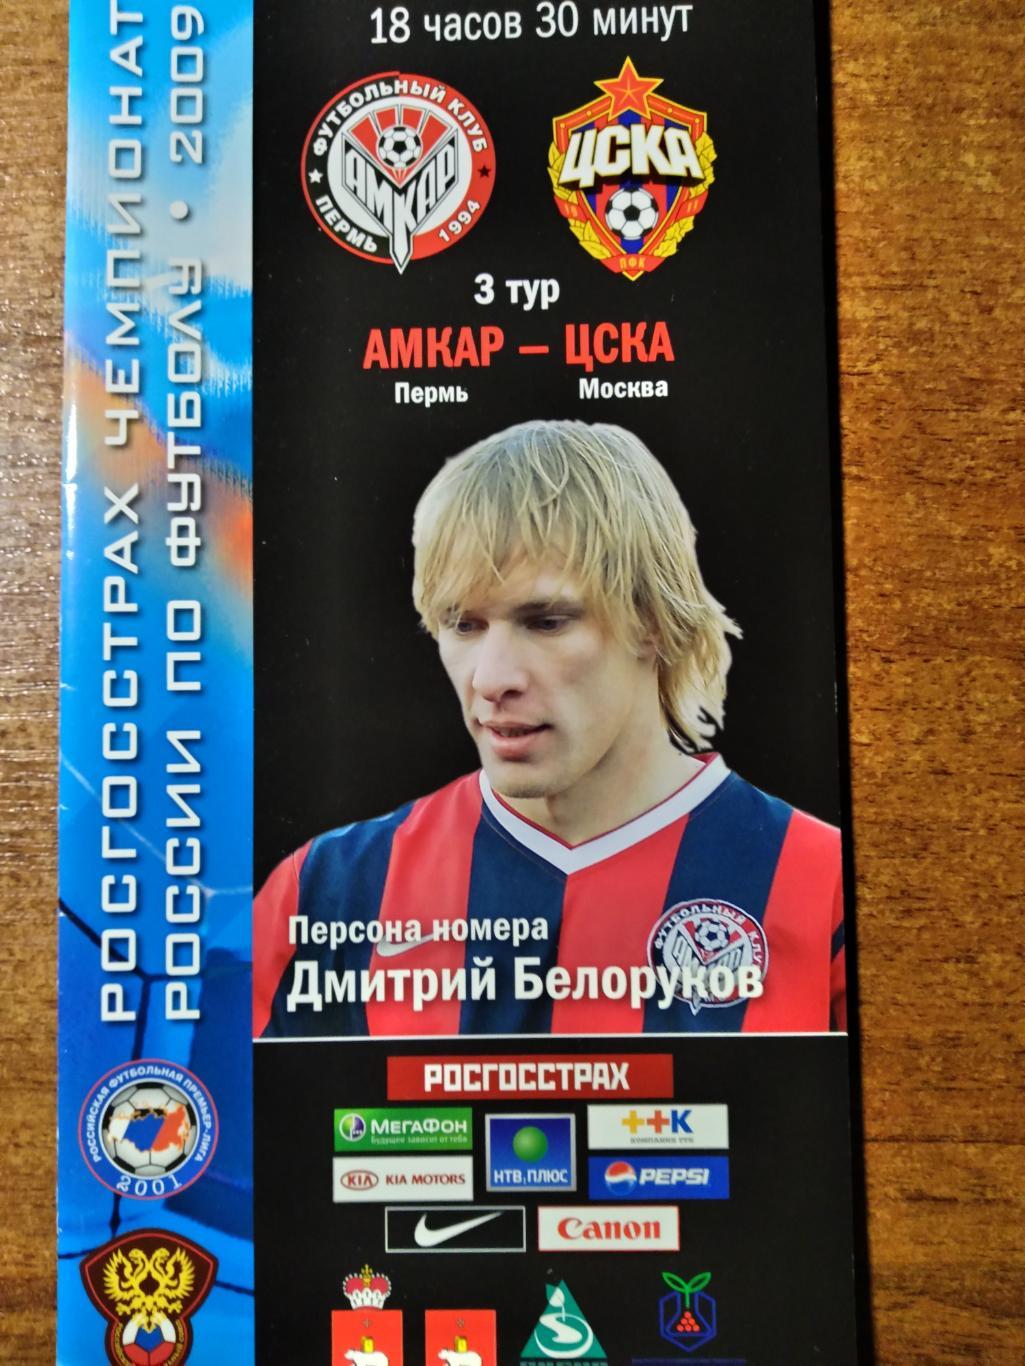 Программа матча РПЛ Амкар(Пермь)-ЦСКА(Москва) 2009г.